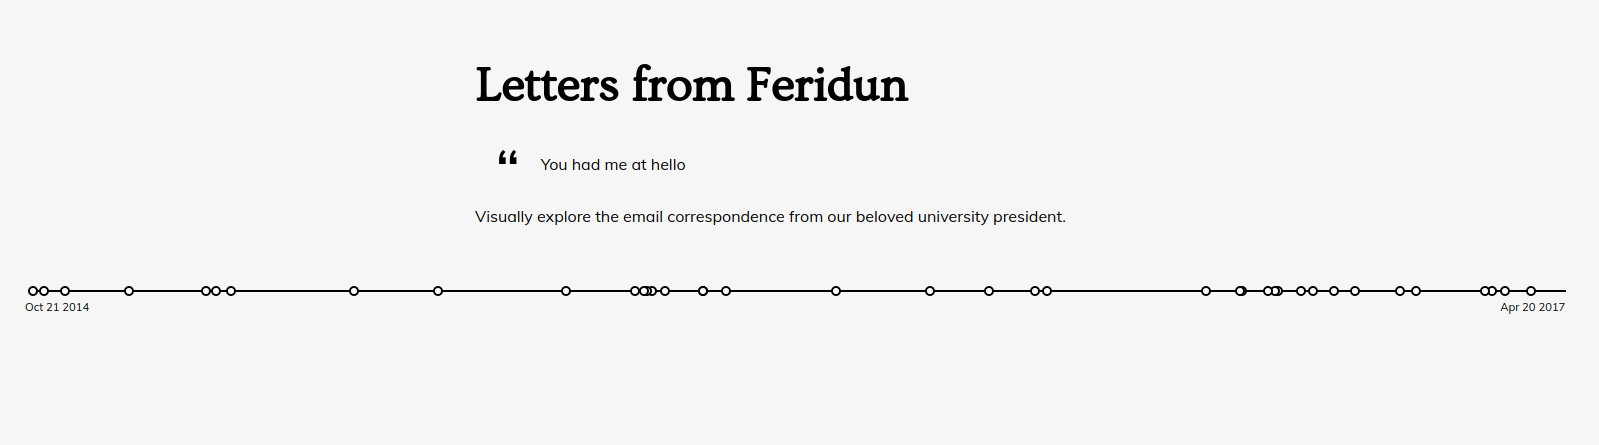 Letters from Feridun timeline